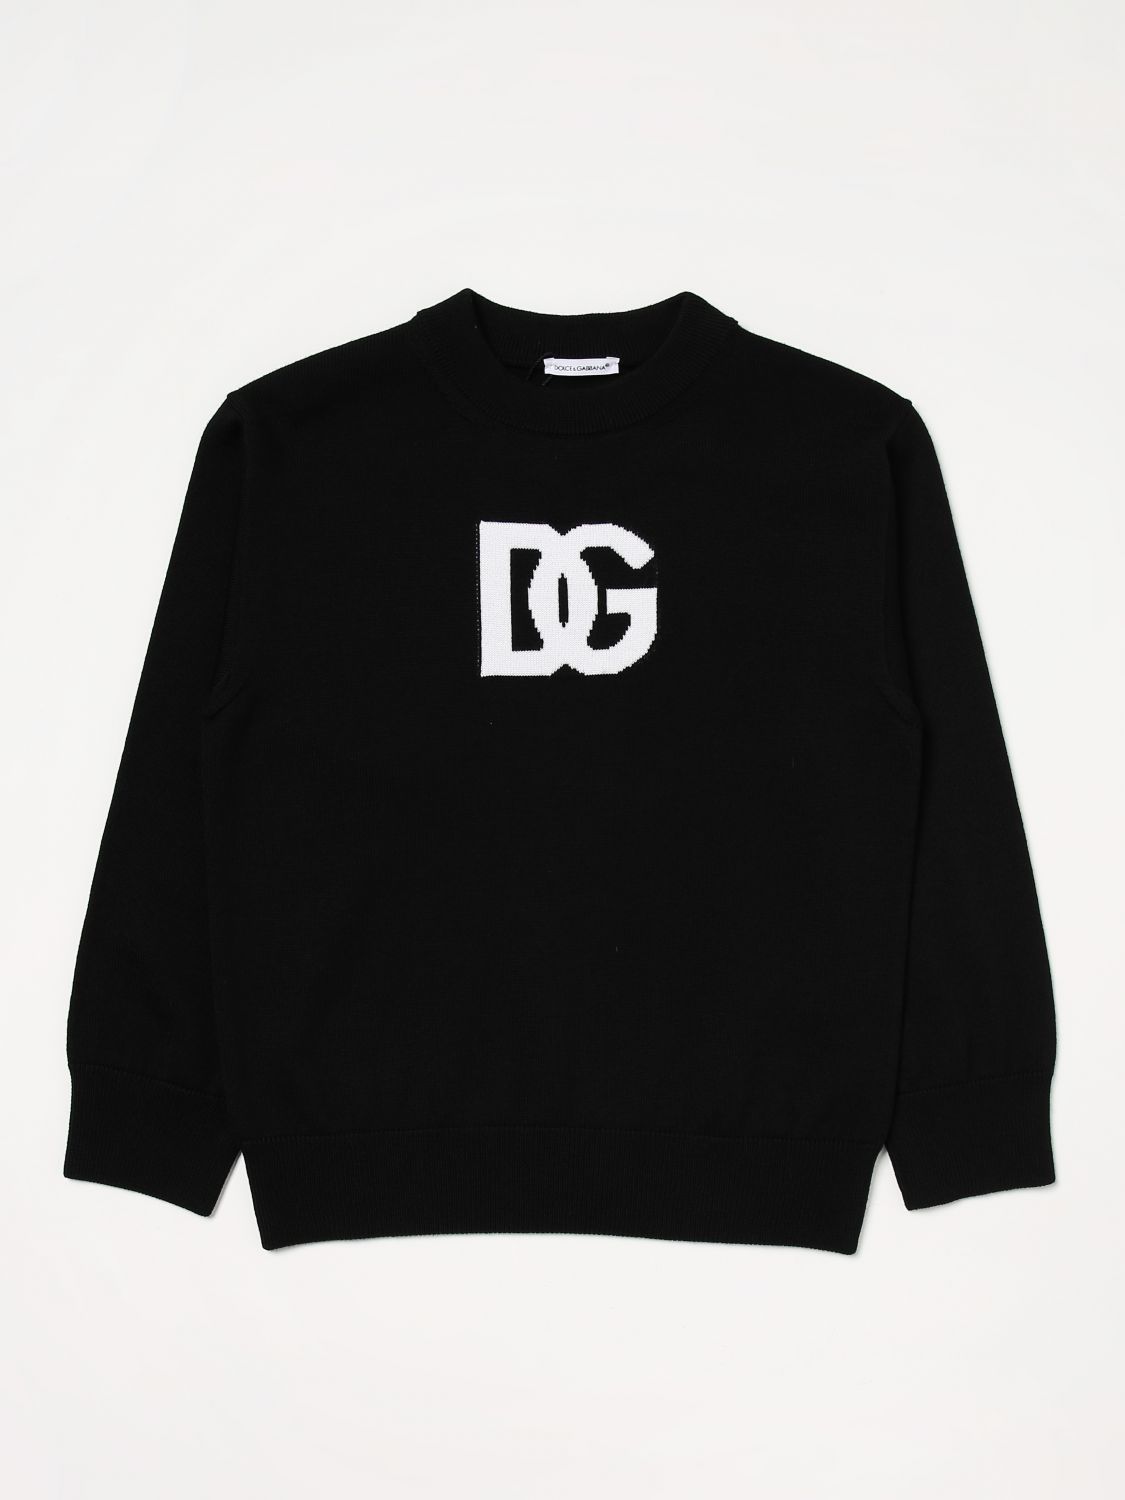 Dolce & Gabbana Kids' Jumper In Virgin Wool In Black